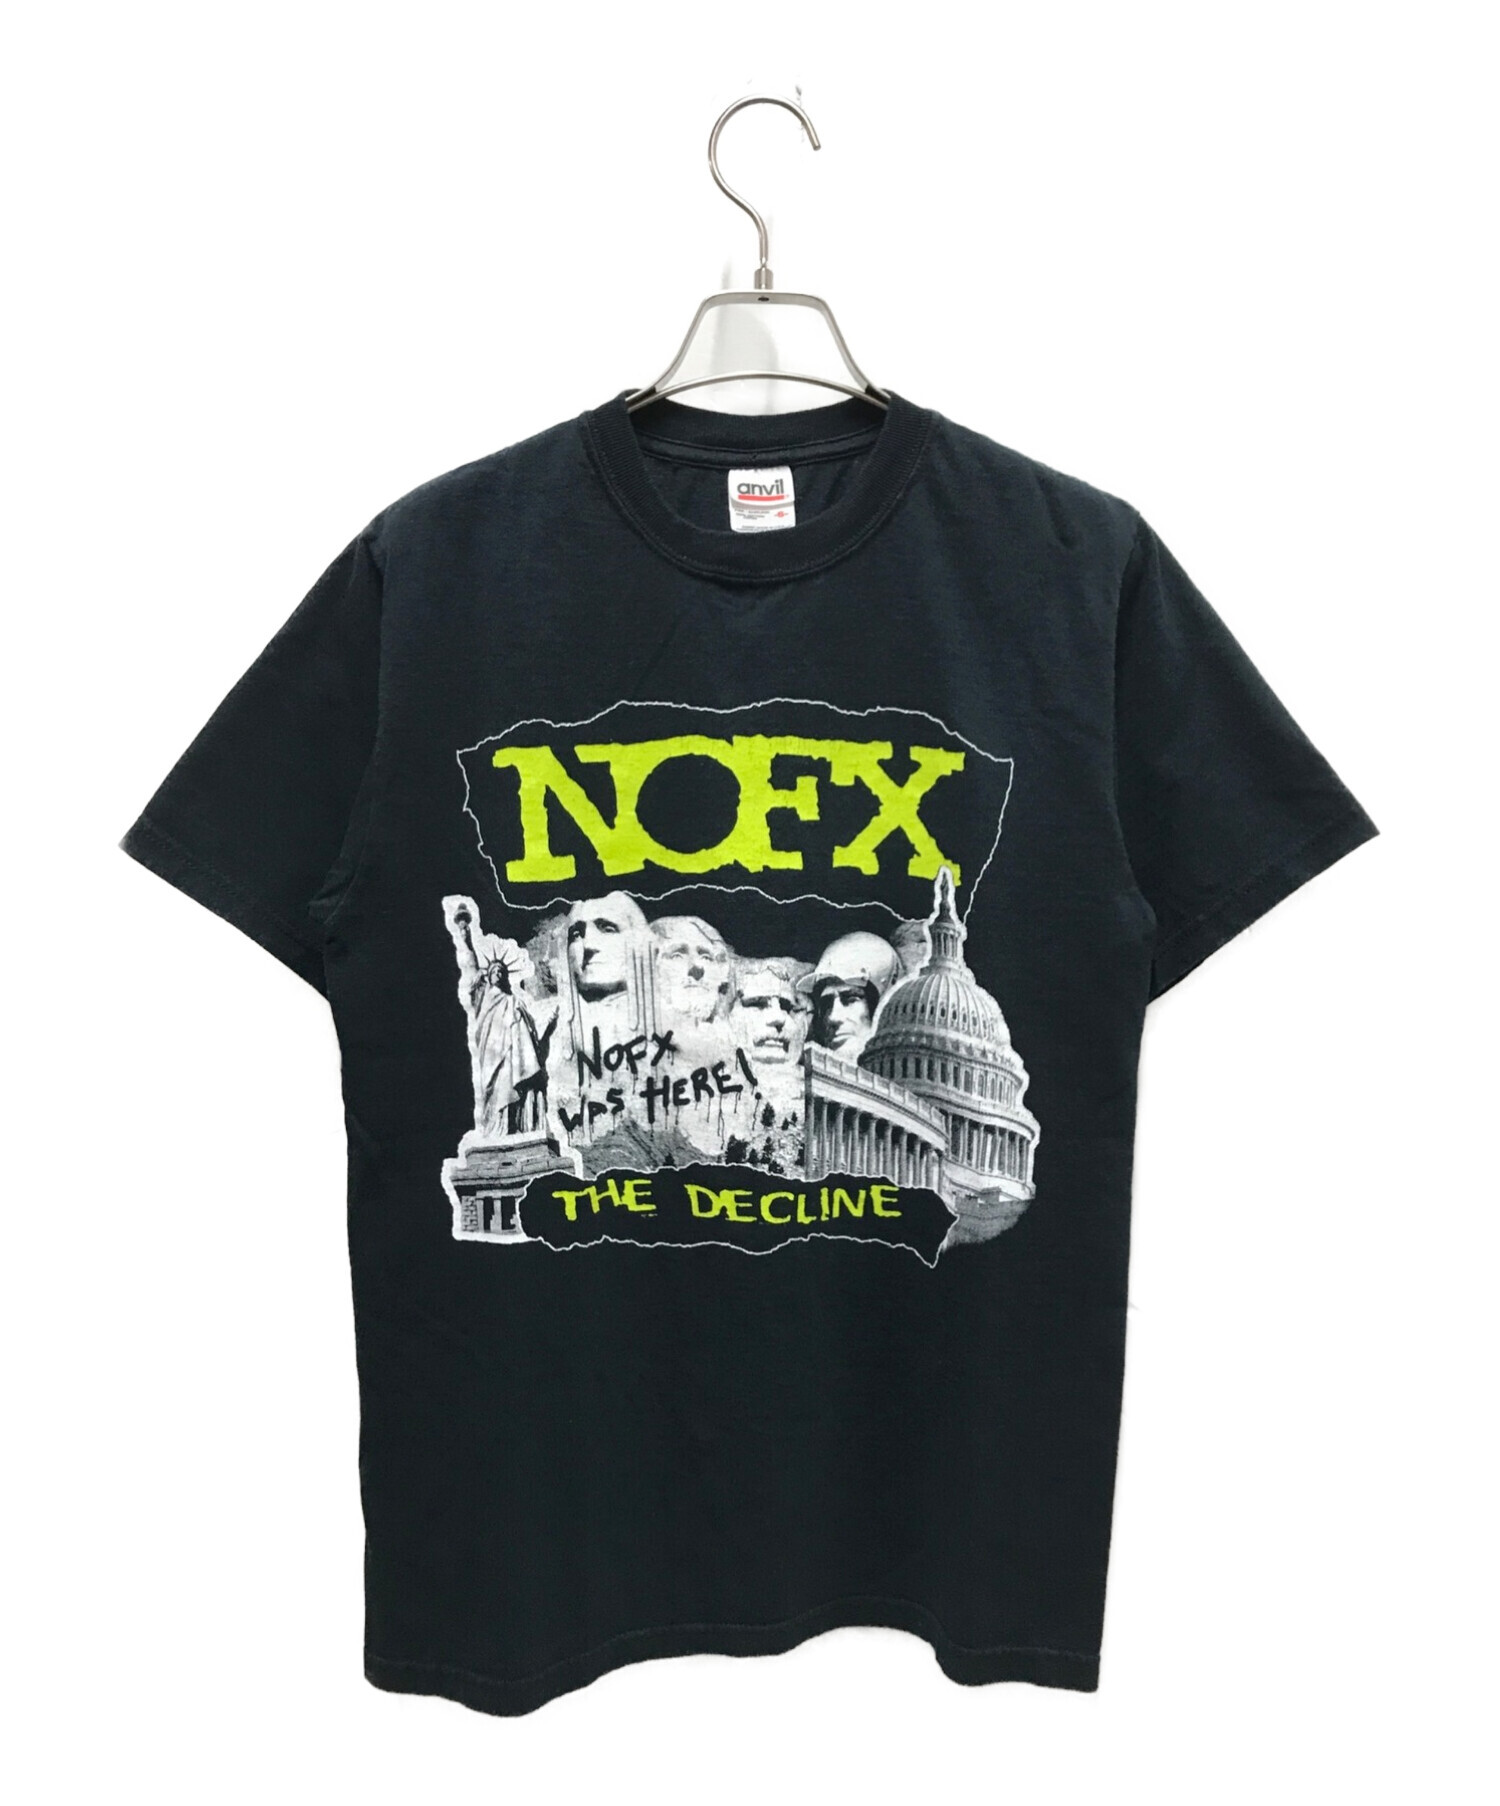 7,473円90's ユニオン13 UNION13 バンド Tシャツ NOFX 黒